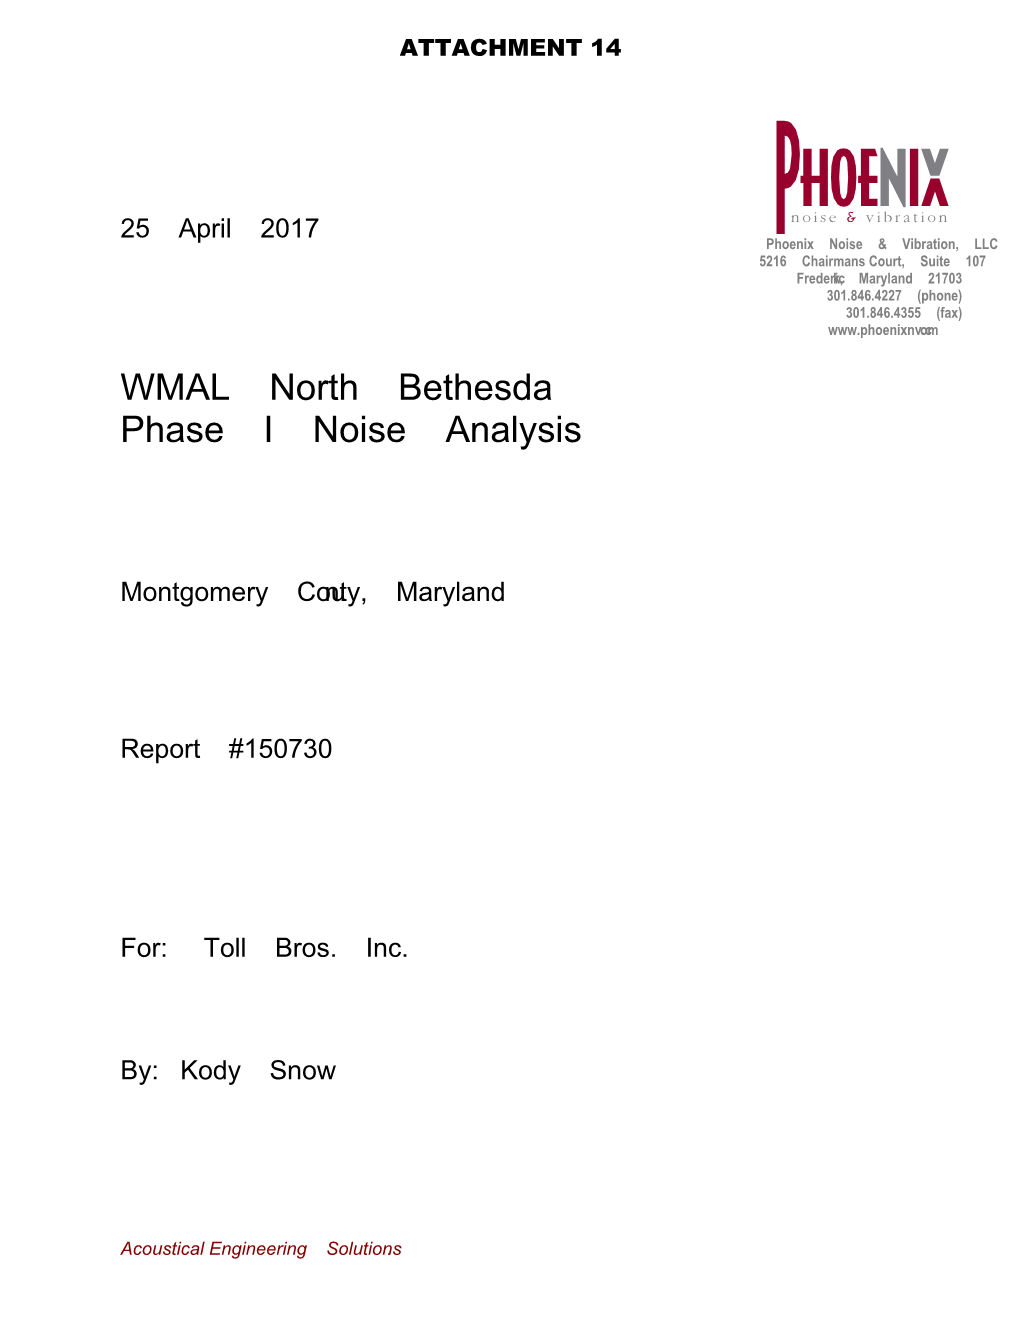 WMAL North Bethesda Phase I Noise Analysis